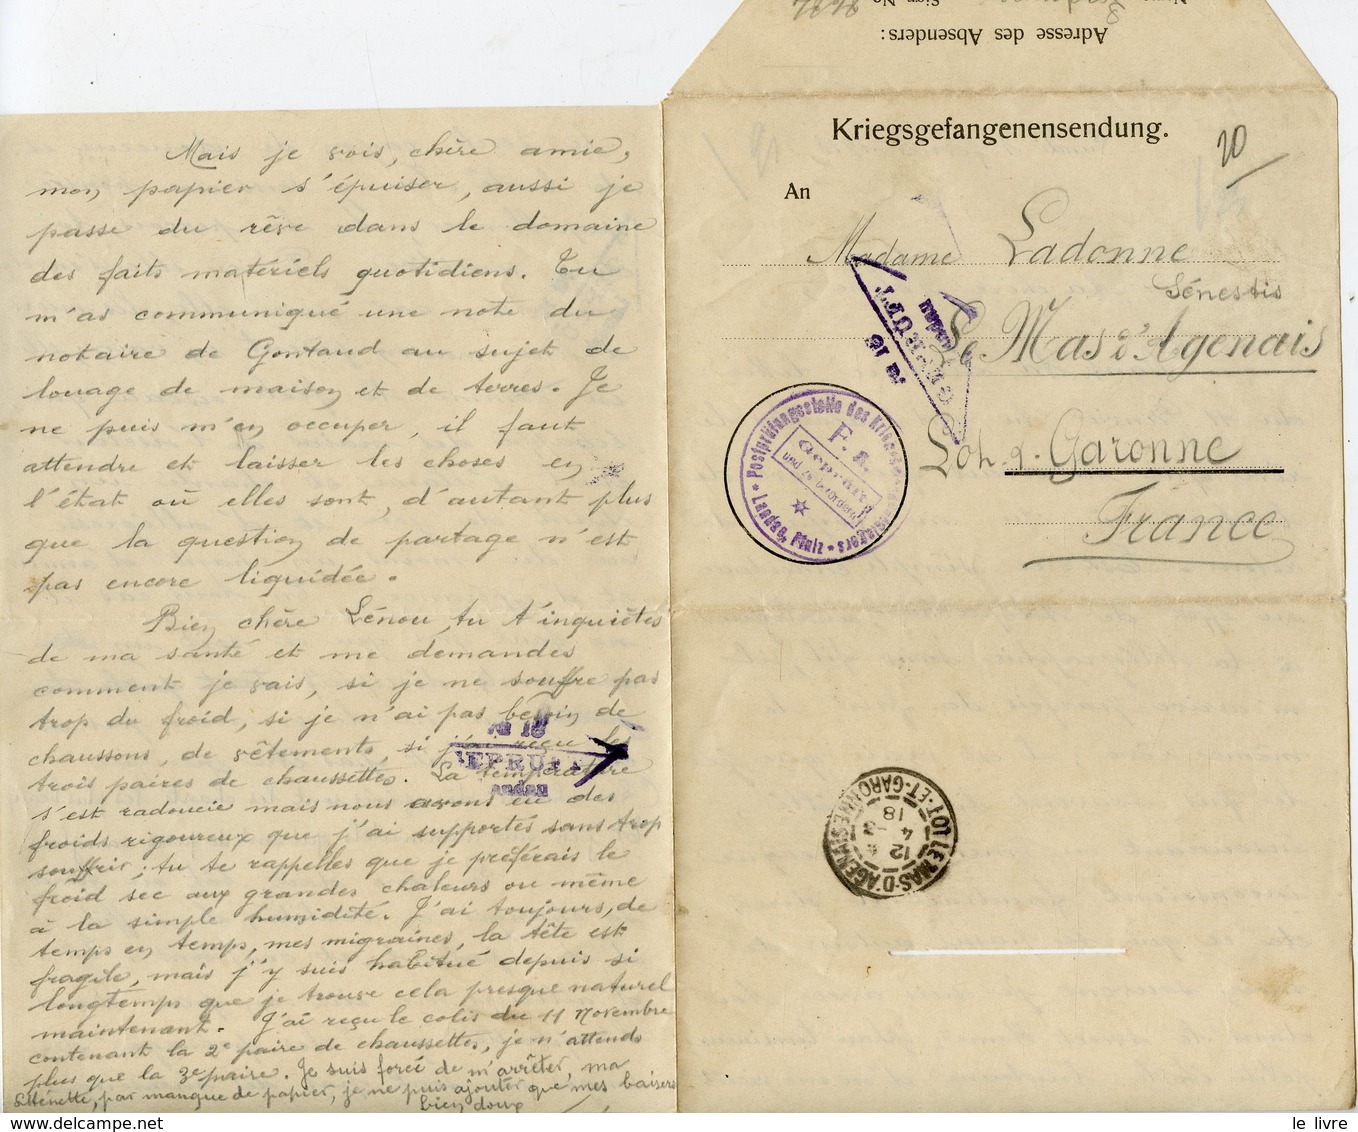 WW1 CAMP DE PRISONNIERS DE LANDAU 1917/18 LOT DOCUMENTS KRIEGSGEFANGENENSENDUNG PRISONNIER A SA FAMILLE LE MAS D'AGENAIS - Documenti